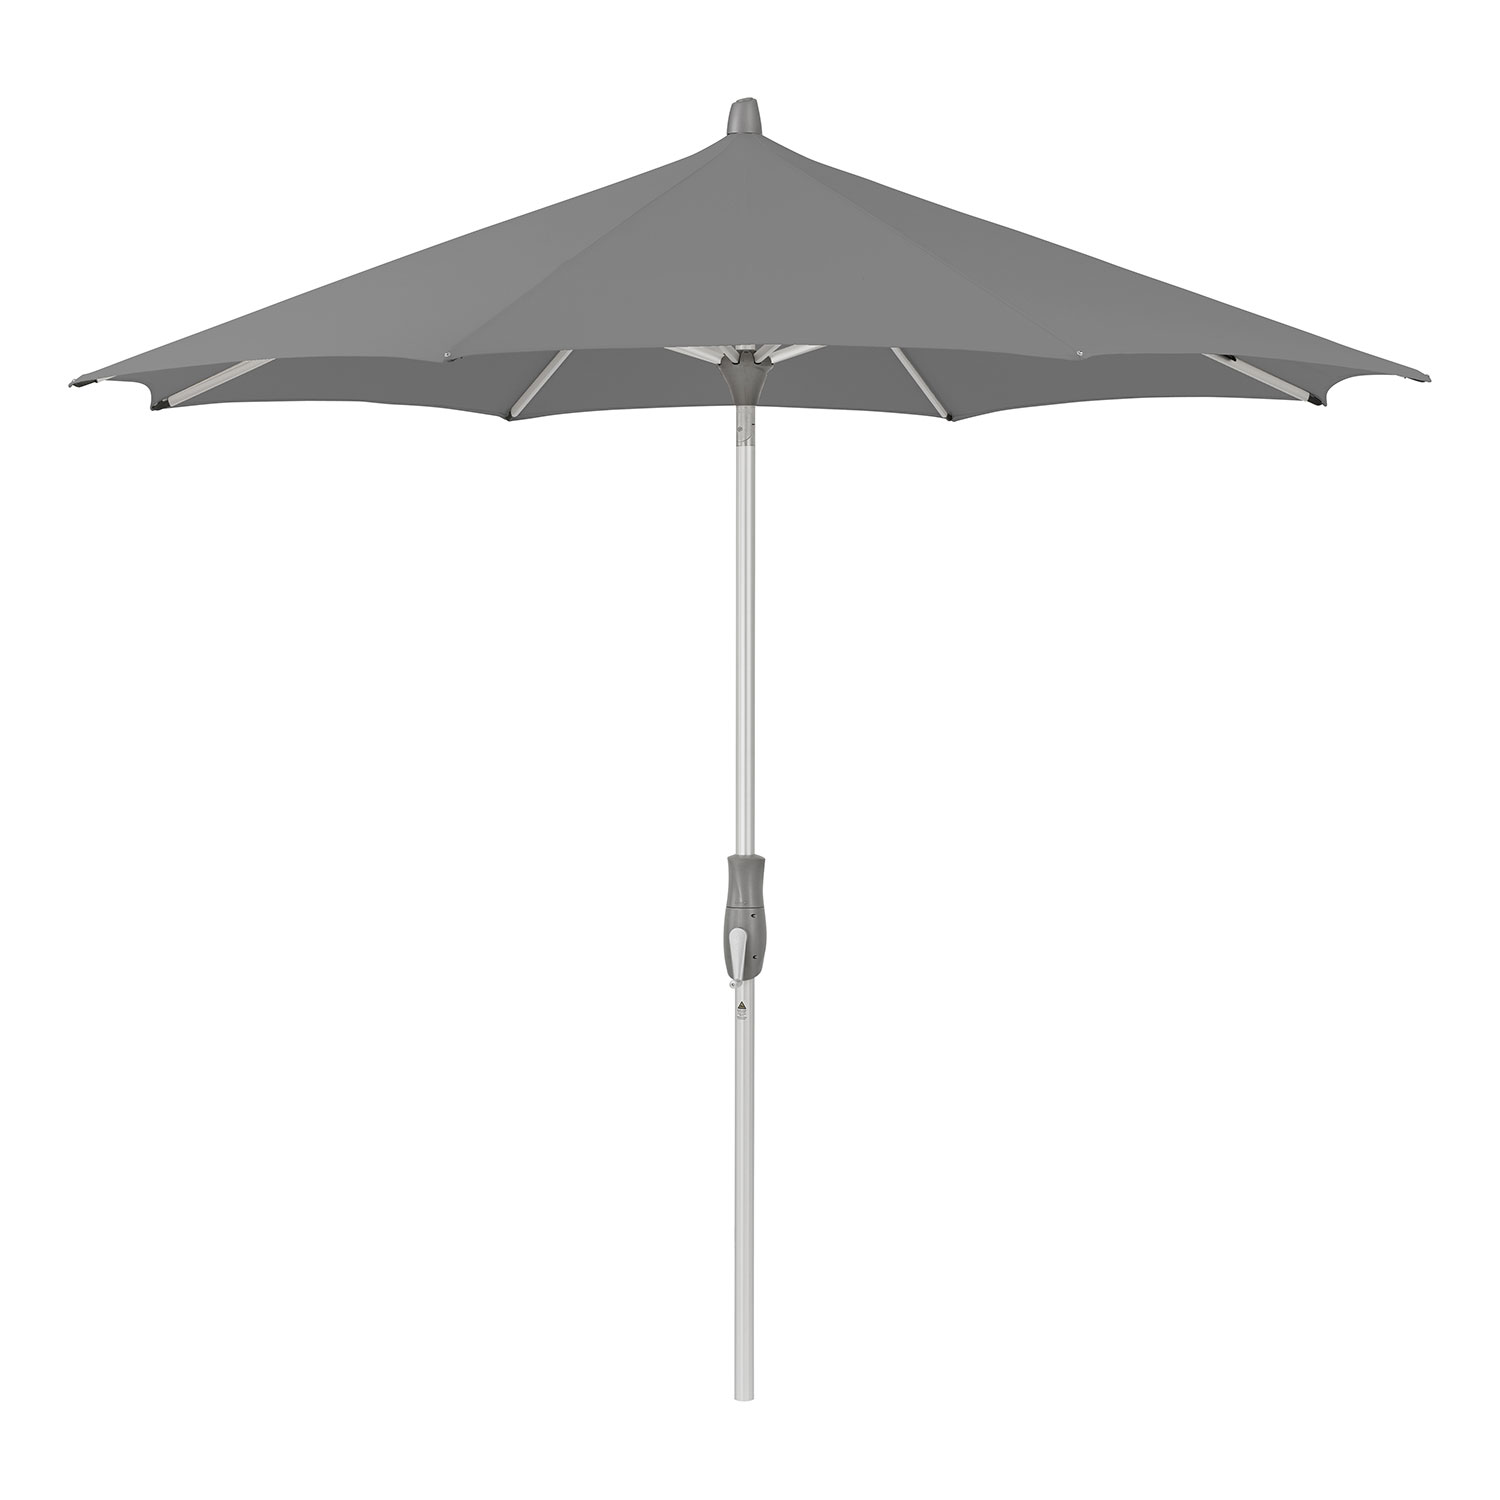 Glatz Alu-twist parasol 330 cm kat.4 420 smoke